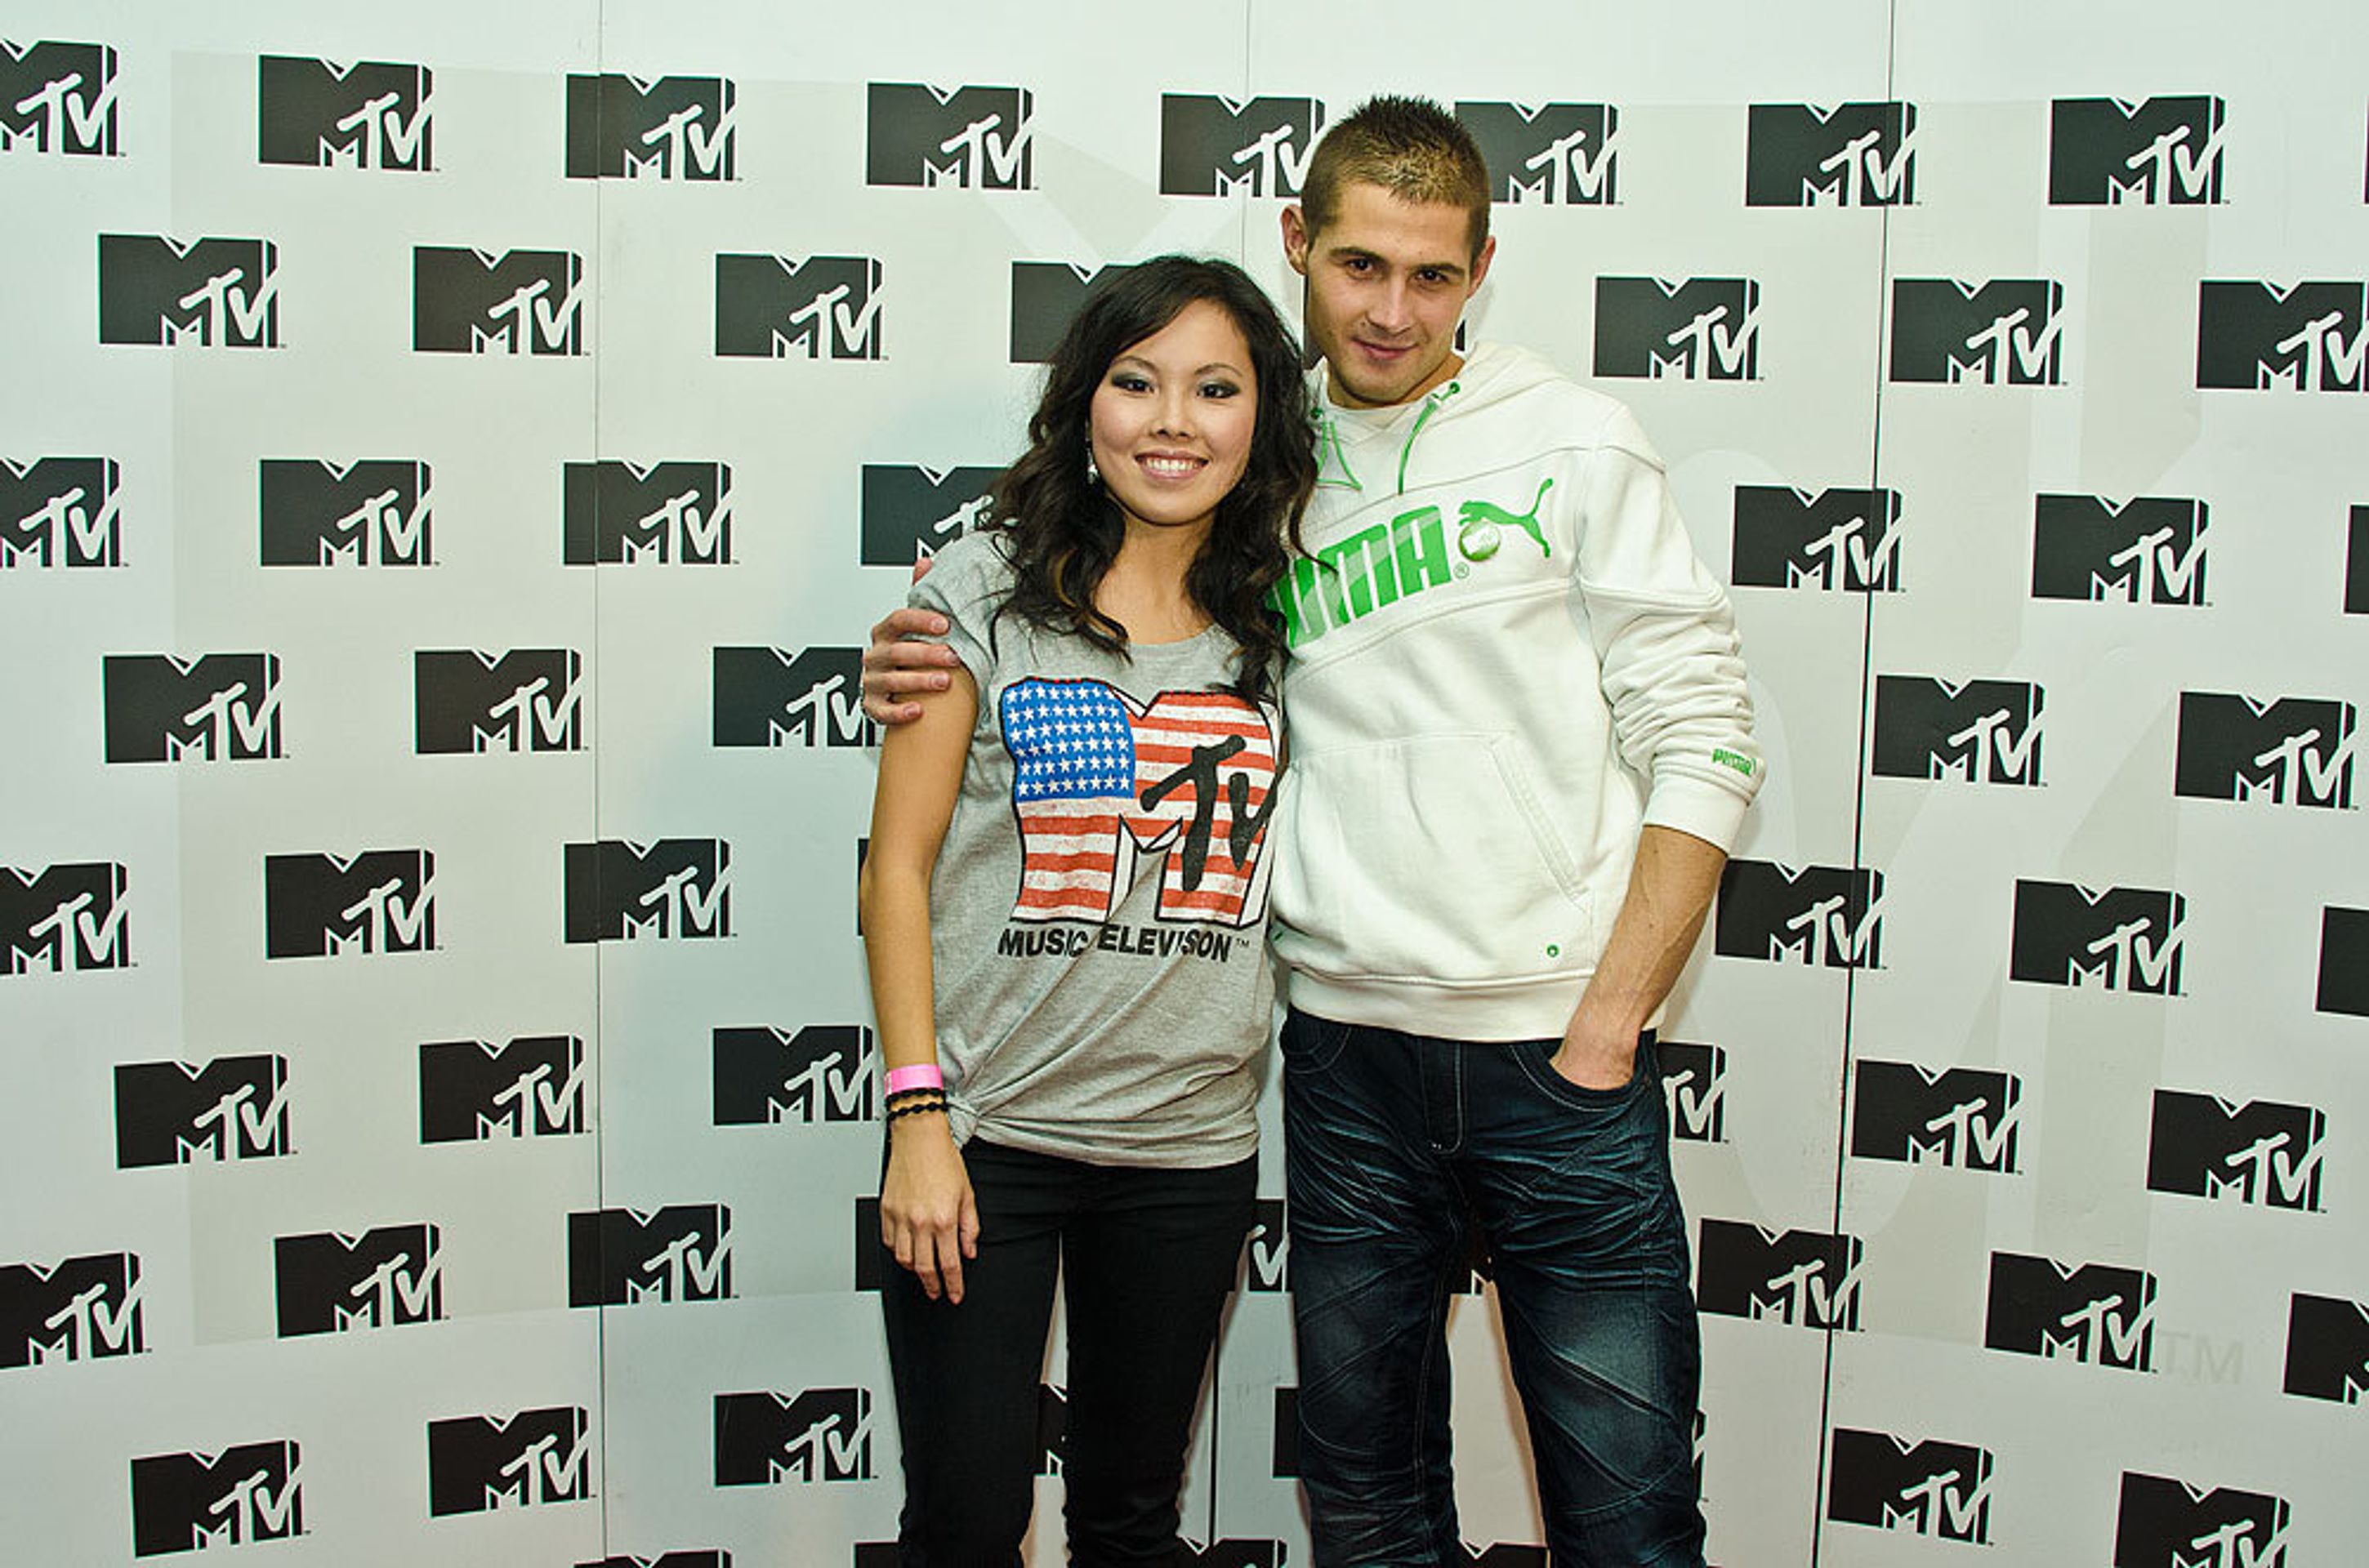 MTV - 8 - MTV oslavila třetí narozeniny (2/10)